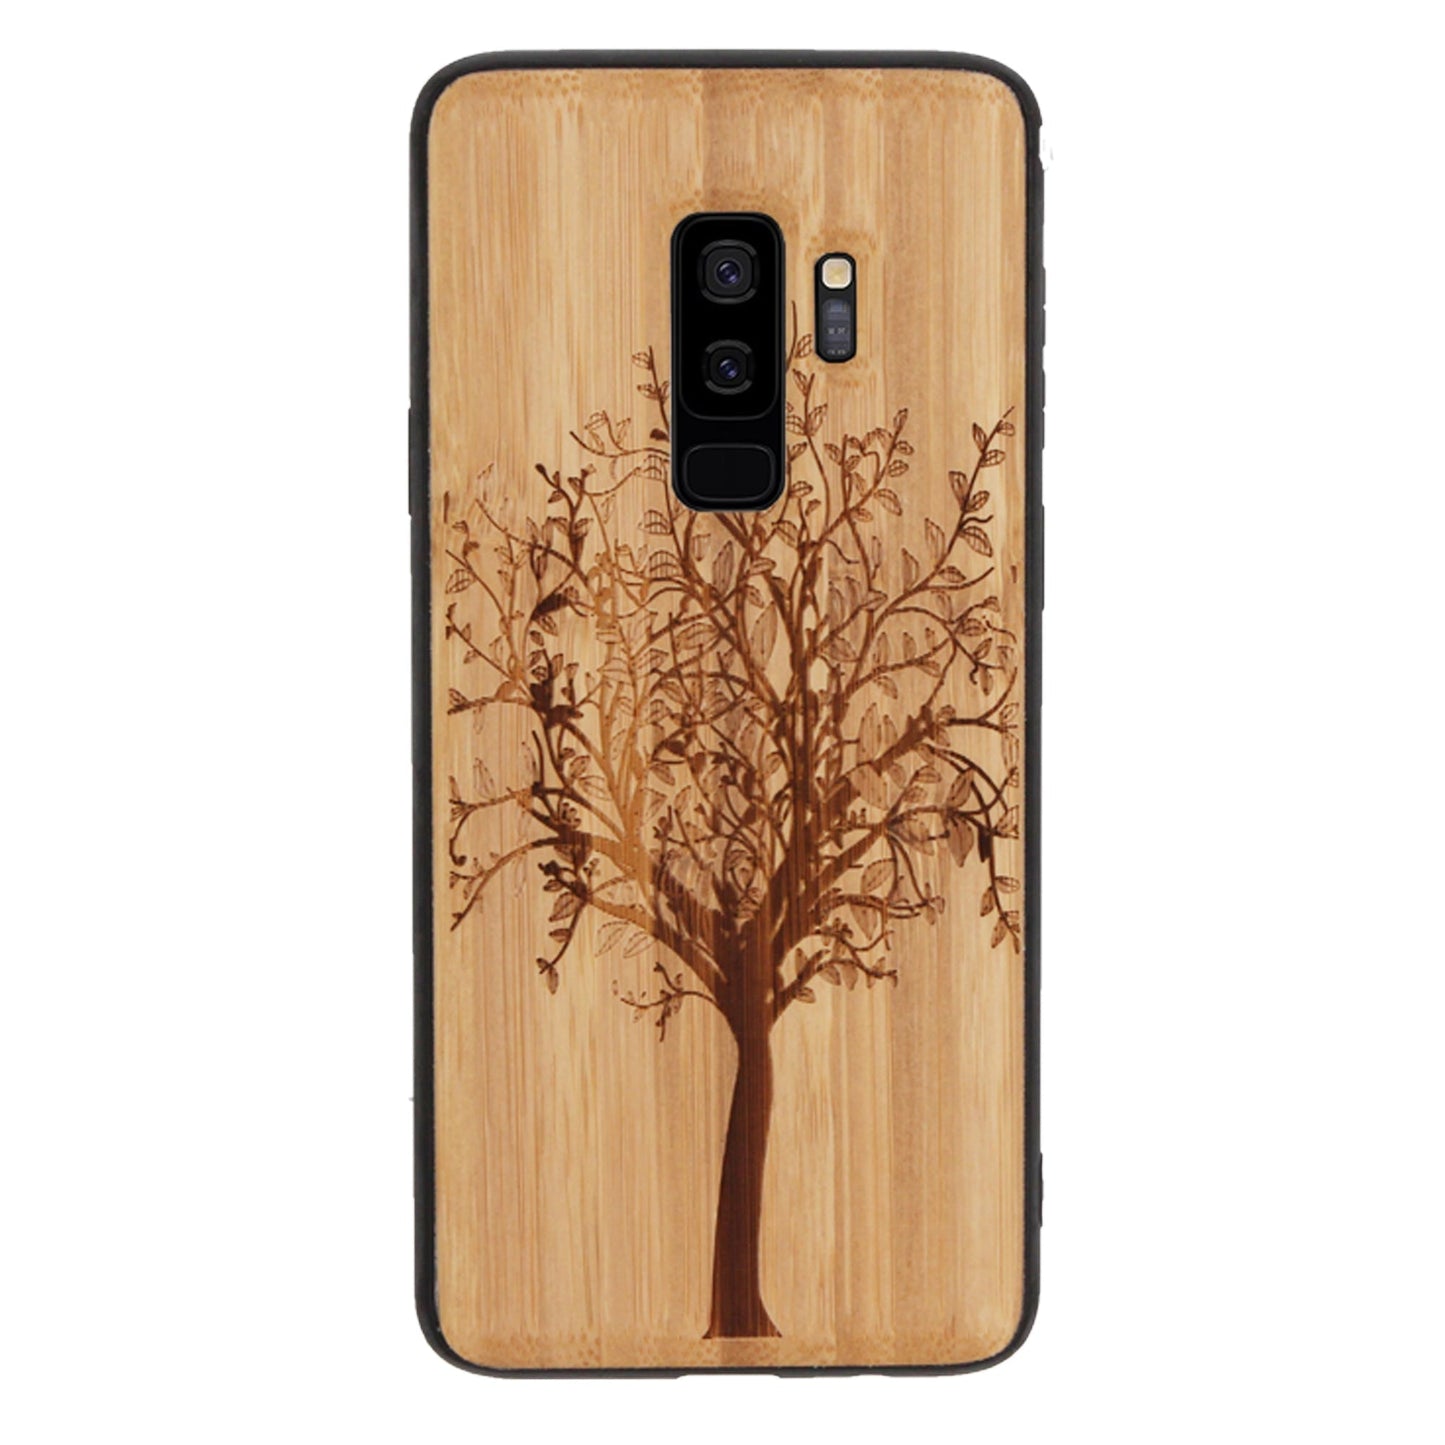 Coque Eden Tree of Life en bambou pour Samsung Galaxy S9 Plus